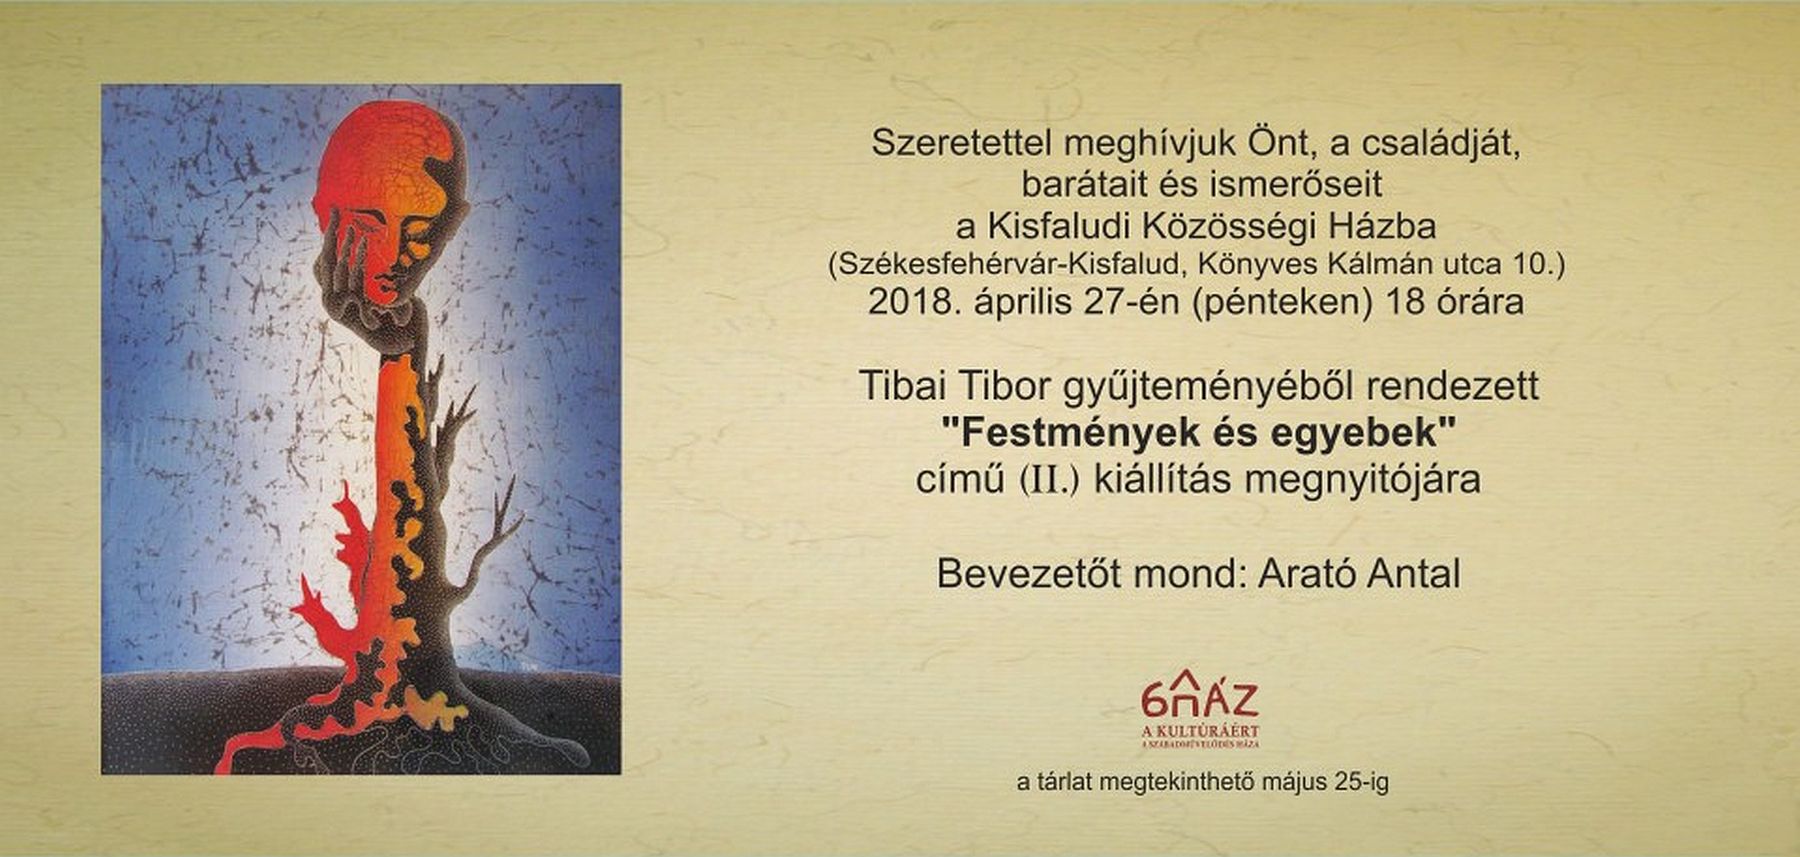 Festmények és egyebek - kiállítás nyílik Tibai Tibor gyűjteményéből Kisfaludon